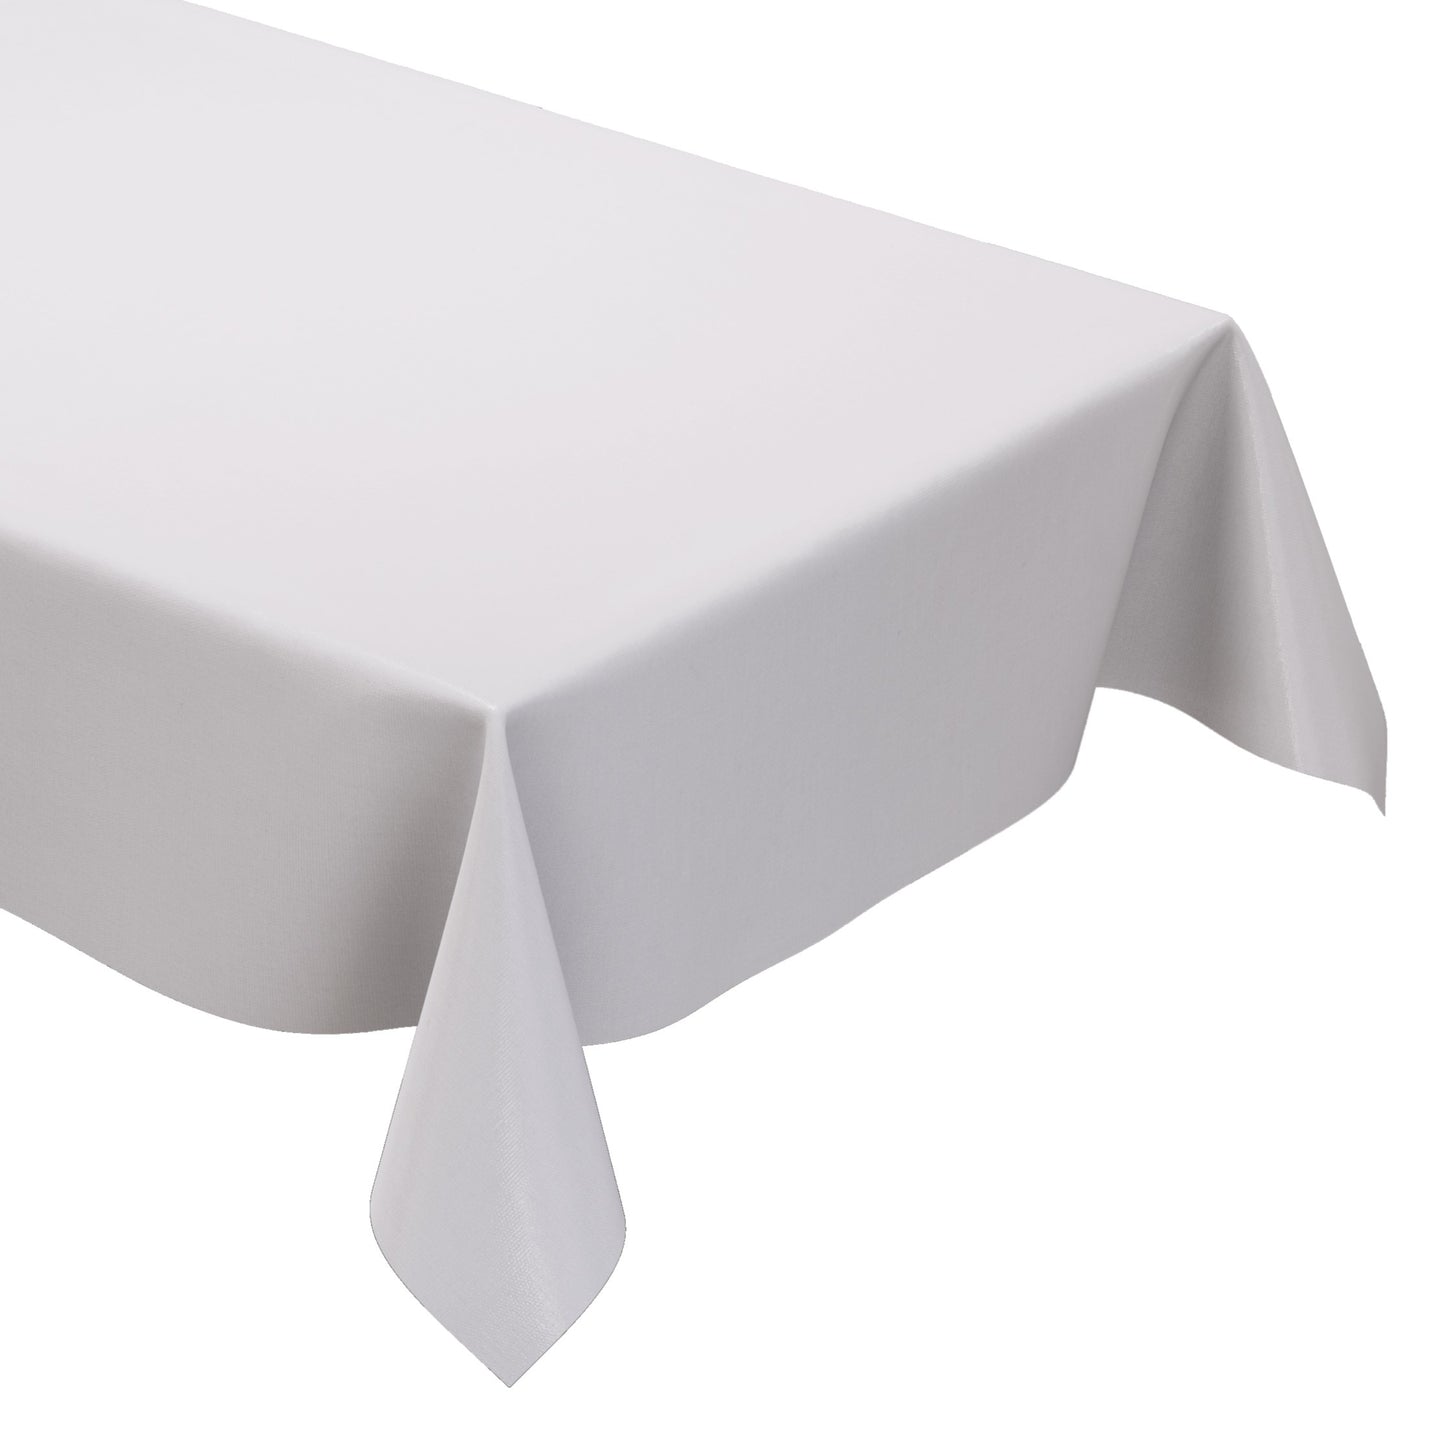 KEVKUS Wachstuch Tischdecke uni 0 weiß weiss einfarbig unifarben eckig rund oval